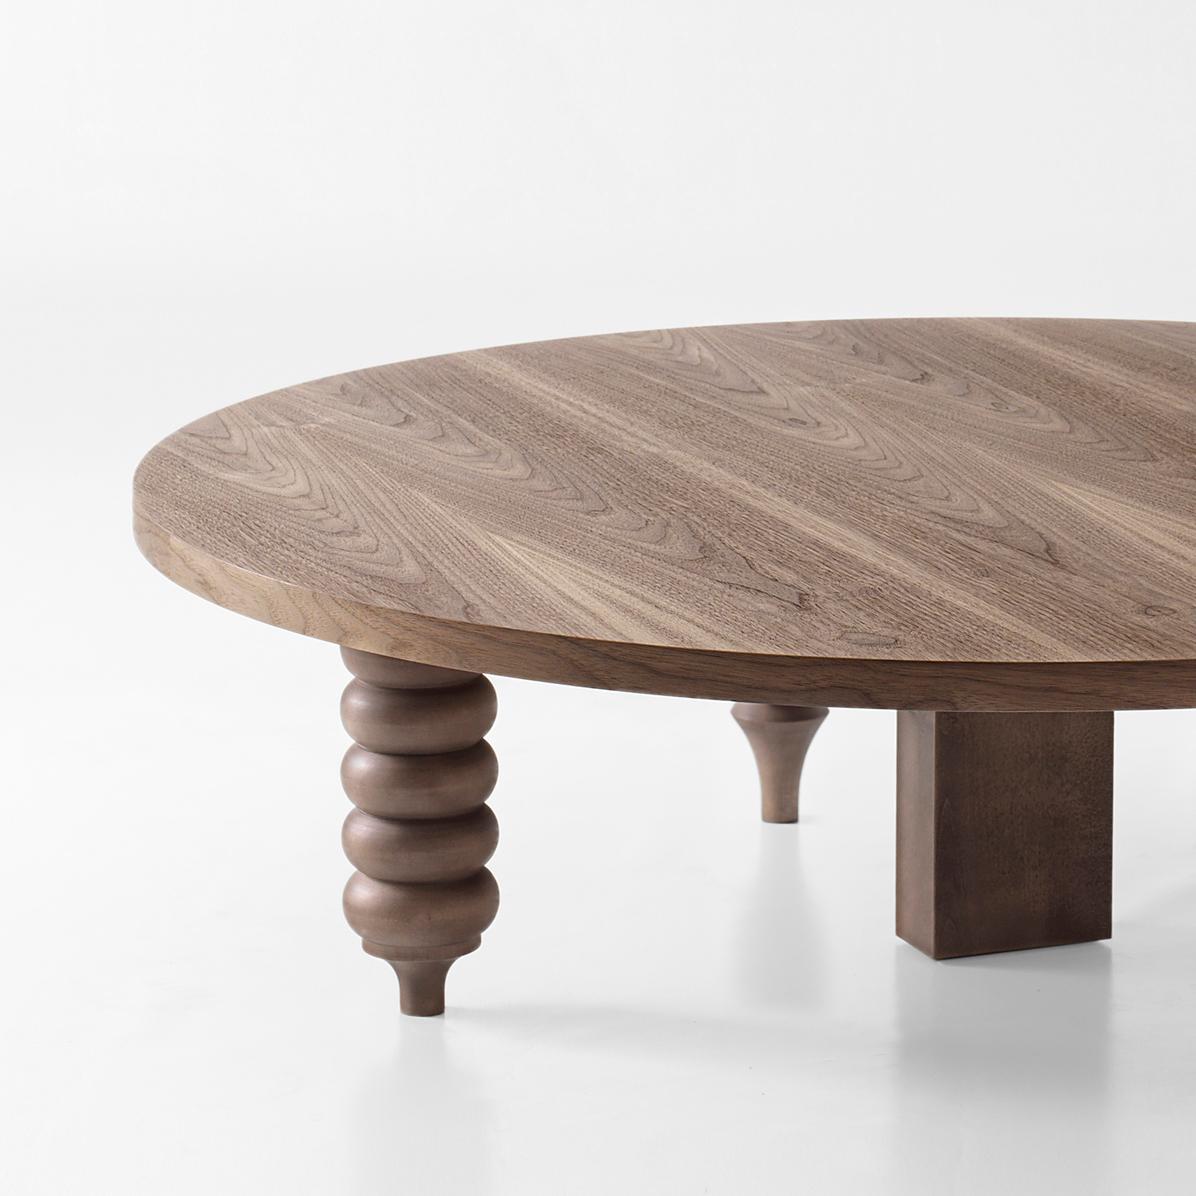 Niedriger Tisch, entworfen von Jaime Hayon, hergestellt in Barcelona von BD

Sockel aus MDF und Beine aus gedrechseltem massivem Erlenholz, 

Maße: Abgerundeter Tisch
Ø 80/120 x H 35 cm.